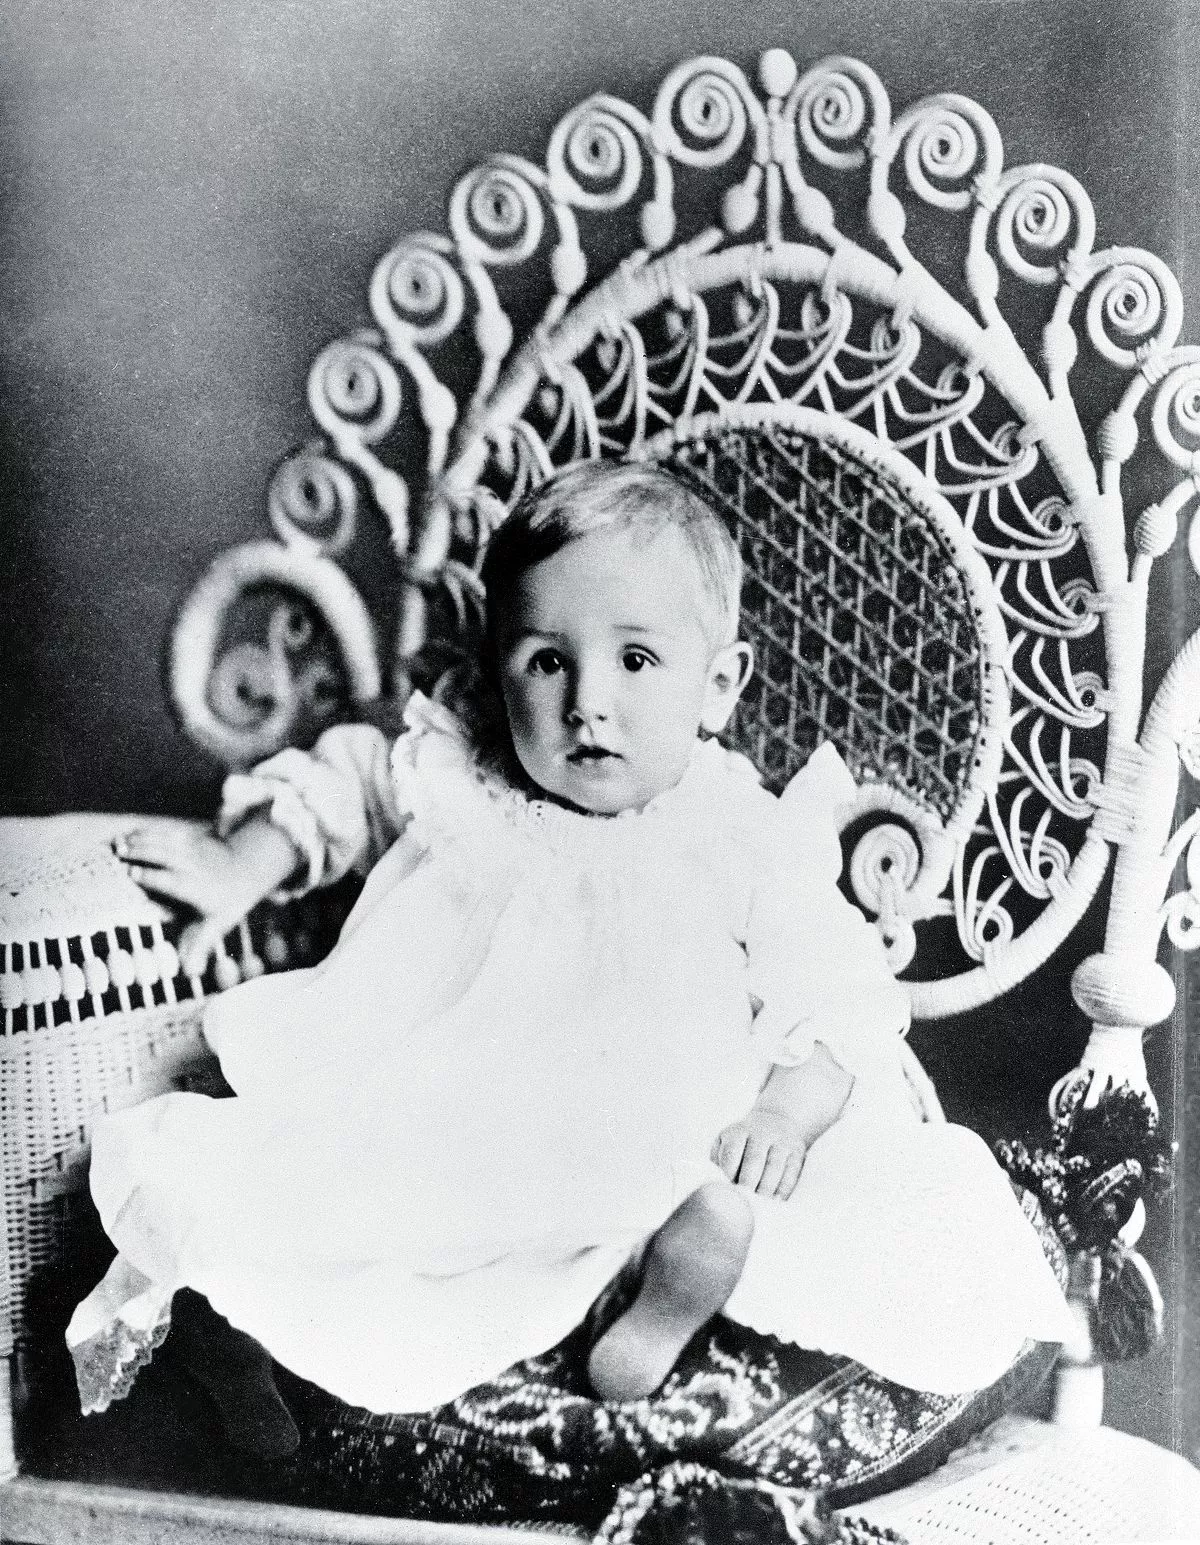 Студийный портрет будущего главы американской киностудии Уолта Диснея в младенчестве